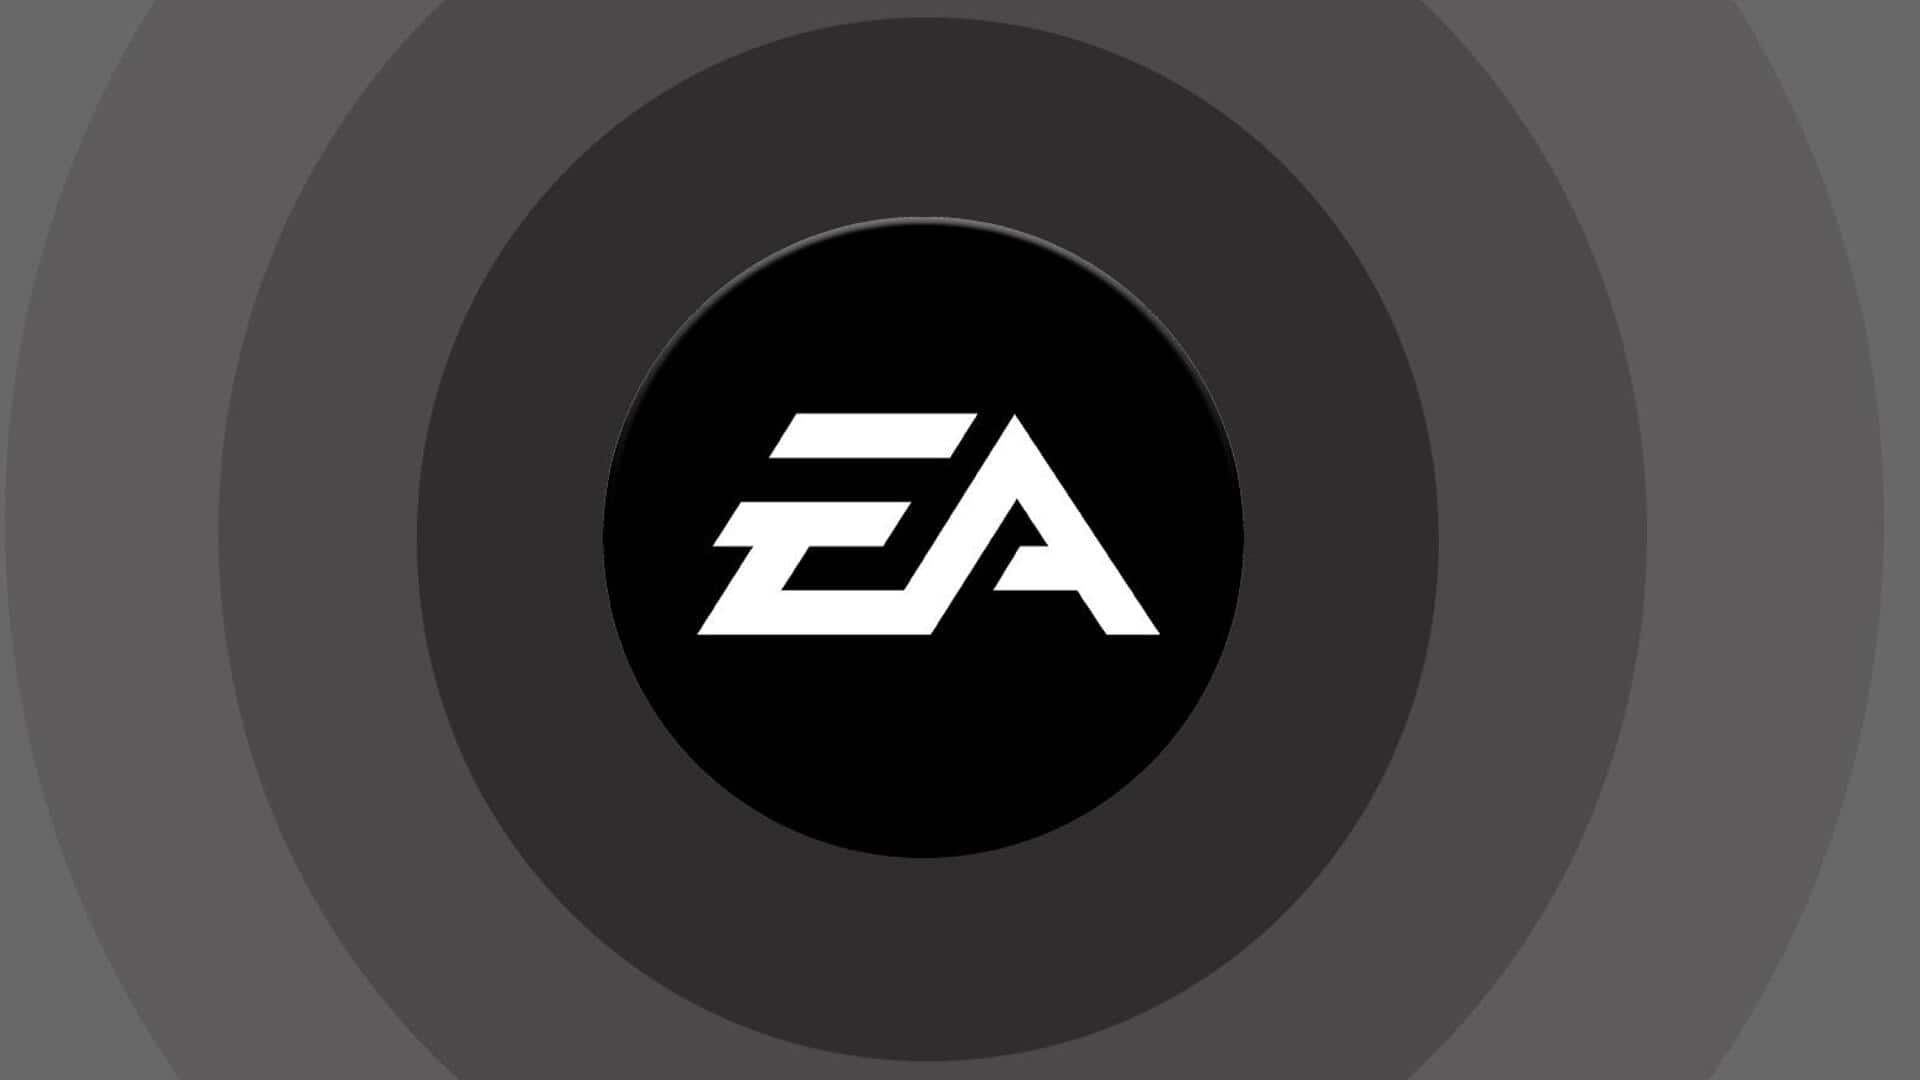 गेमिंग सेक्टर में छंटनी का दौर जारी, EA करेगी 650 कर्मचारियों को बाहर